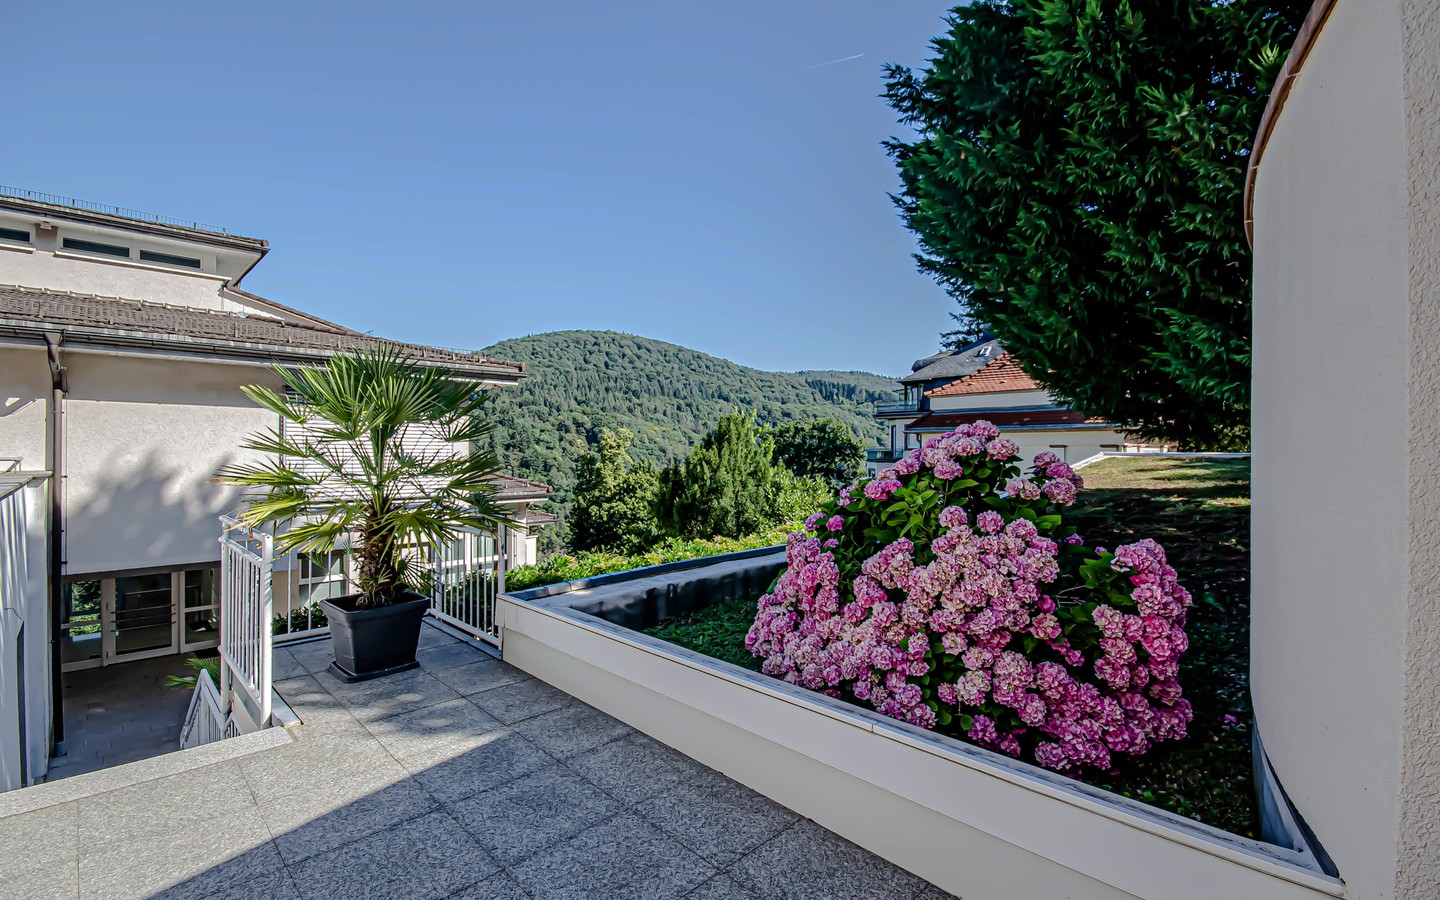 Hauseingang - Luxuriöse Maisonette-Wohnung in einer Architektenvilla mit Terrasse und Garten